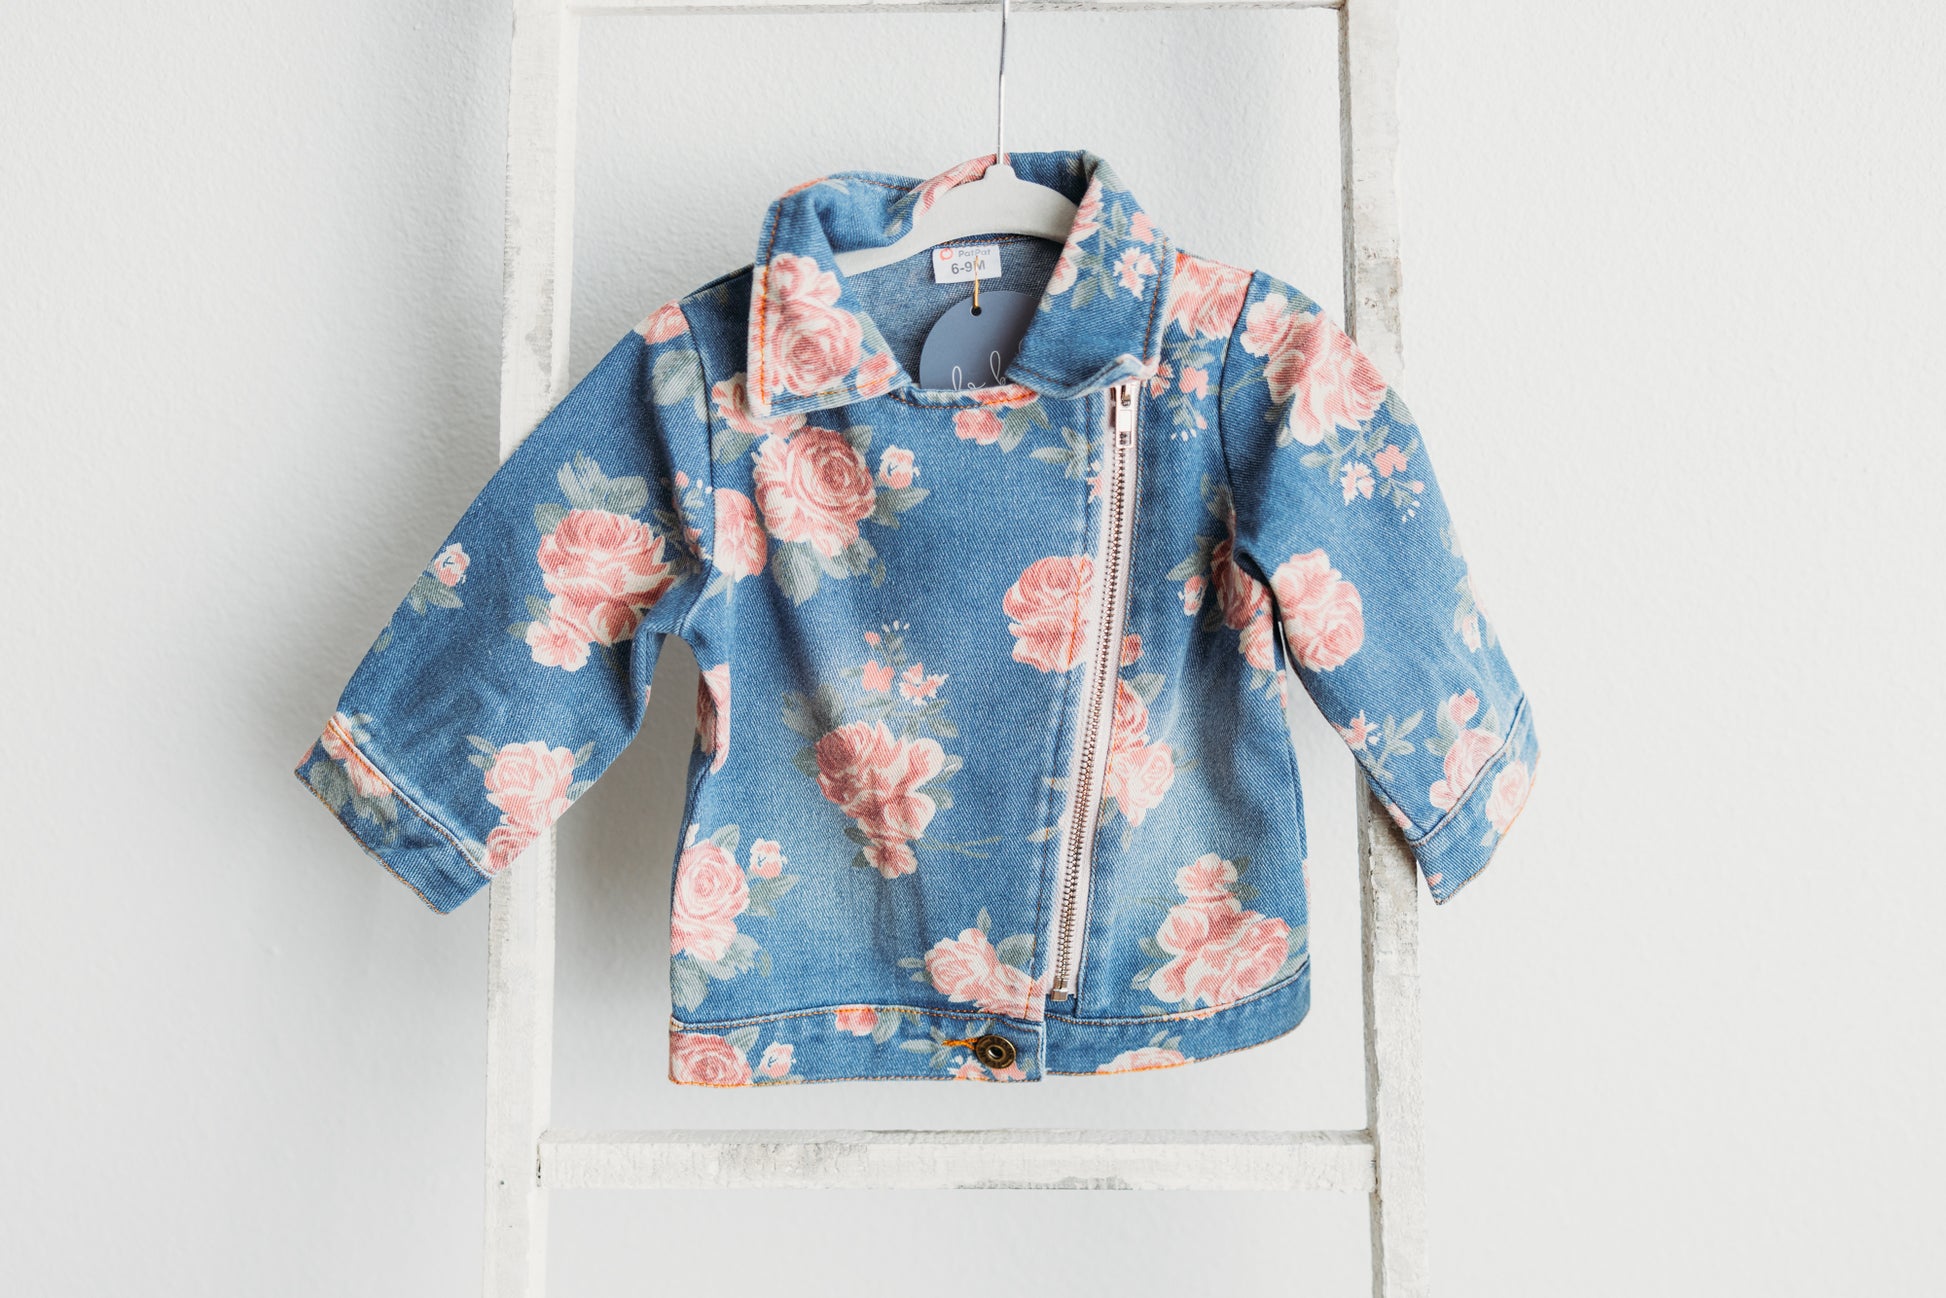 Printed denim jacket - Denim blue/Floral - Ladies